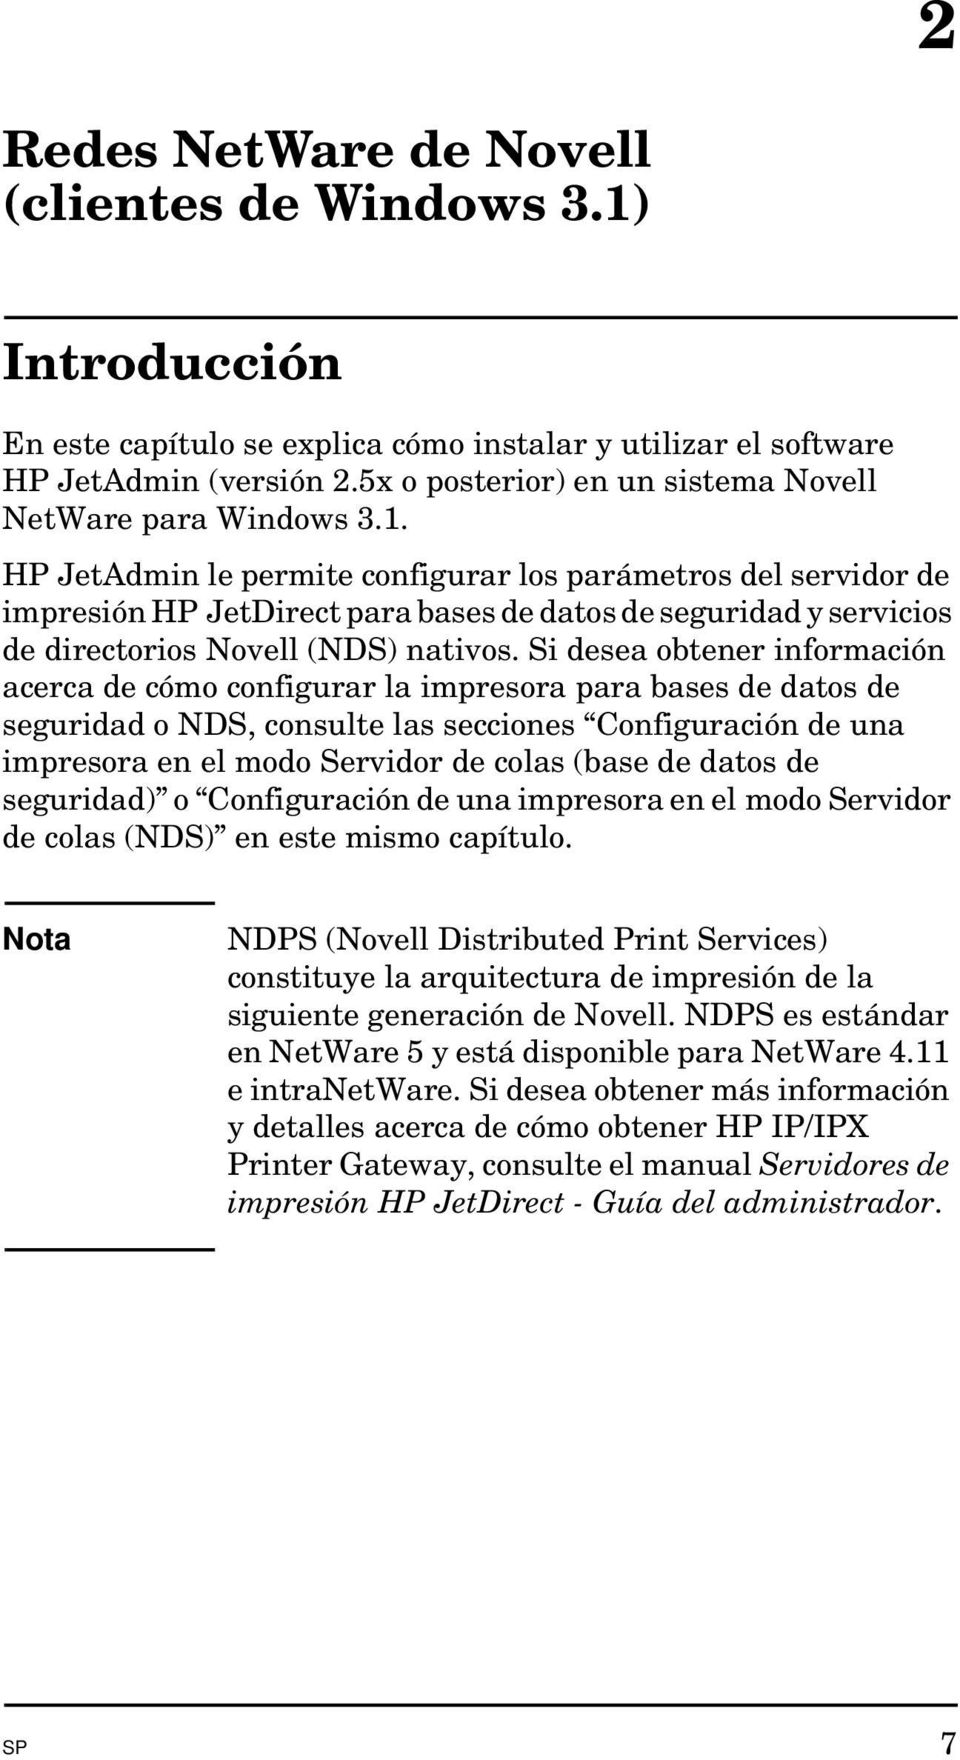 HP JetAdmin le permite configurar los parámetros del servidor de impresión HP JetDirect para bases de datos de seguridad y servicios de directorios Novell (NDS) nativos.